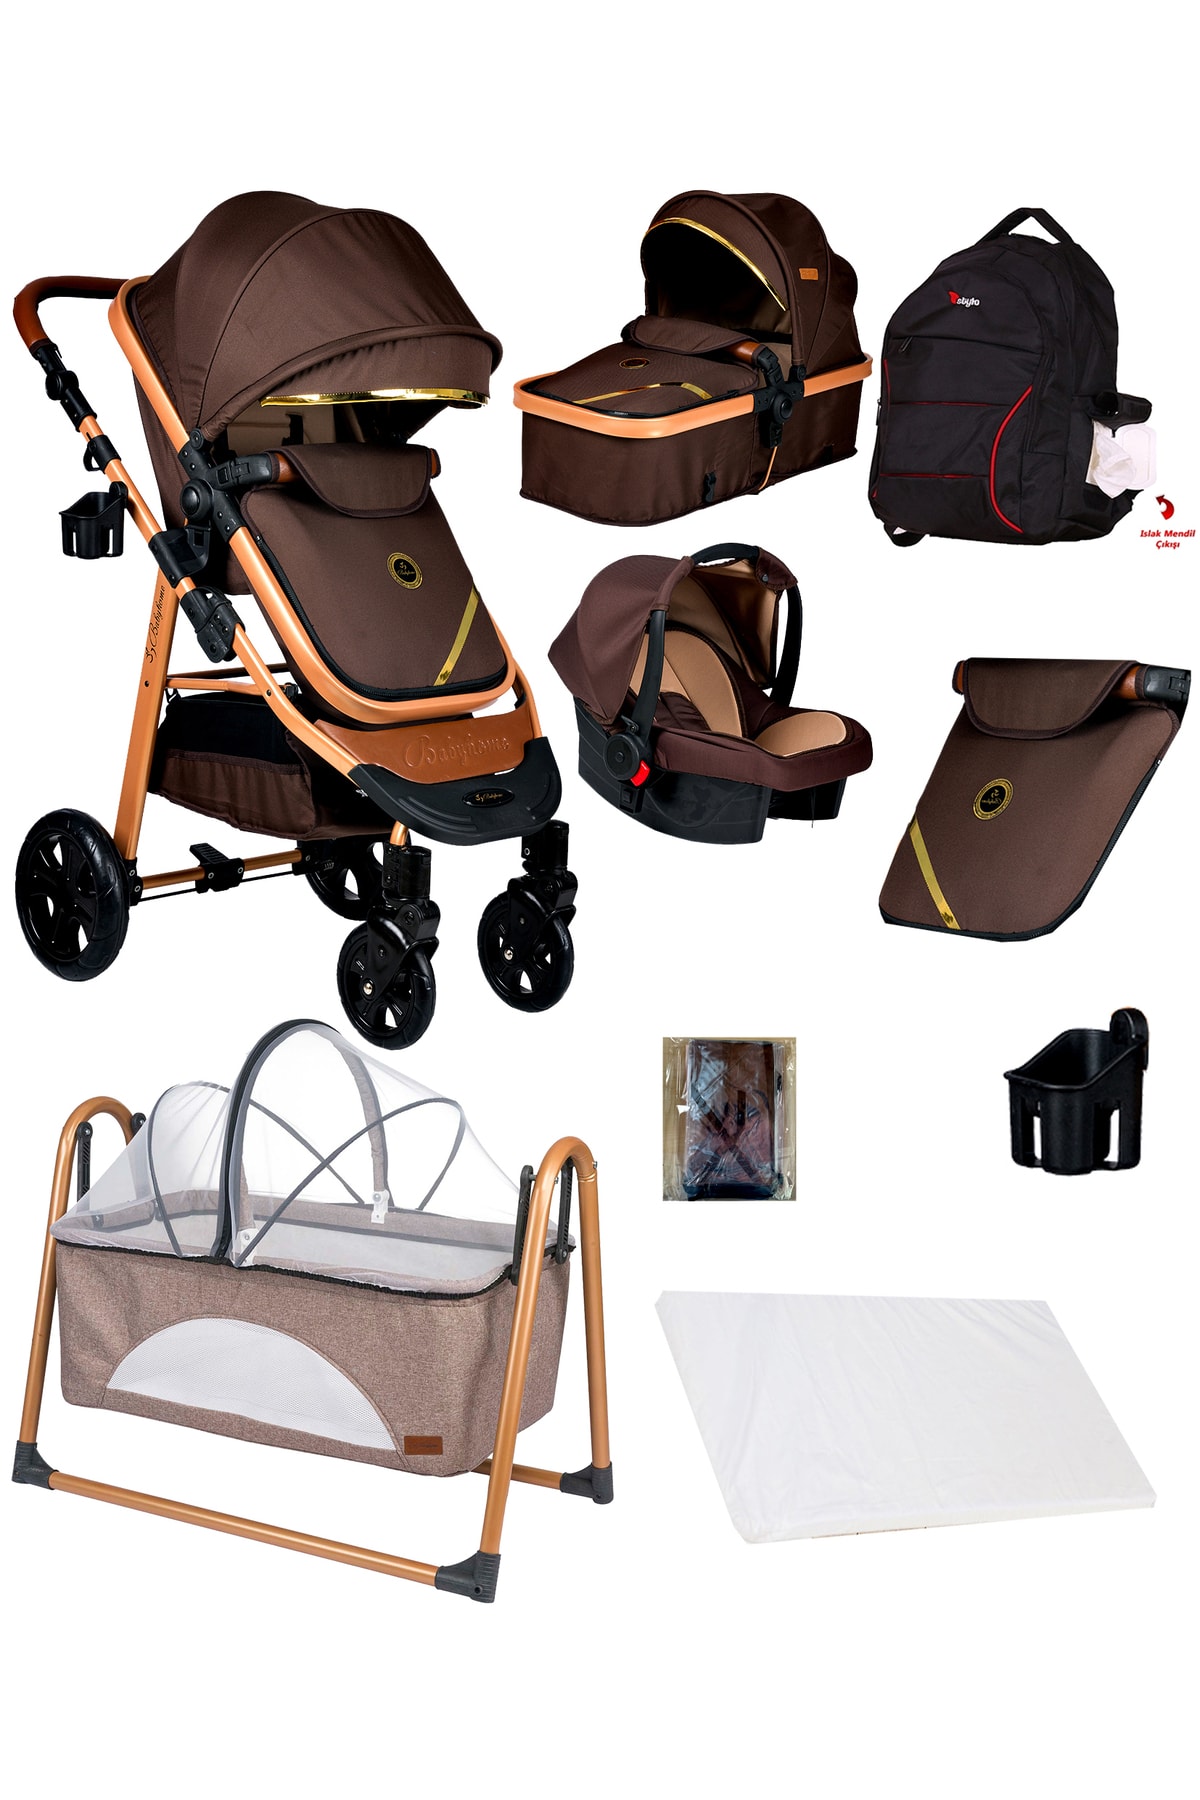 Baby Home Yeni Ekonomi Paket 8 In 1 940 Travel Sistem Bebek Arabası 340 Anne Yanı Bebek Sepeti Beşik